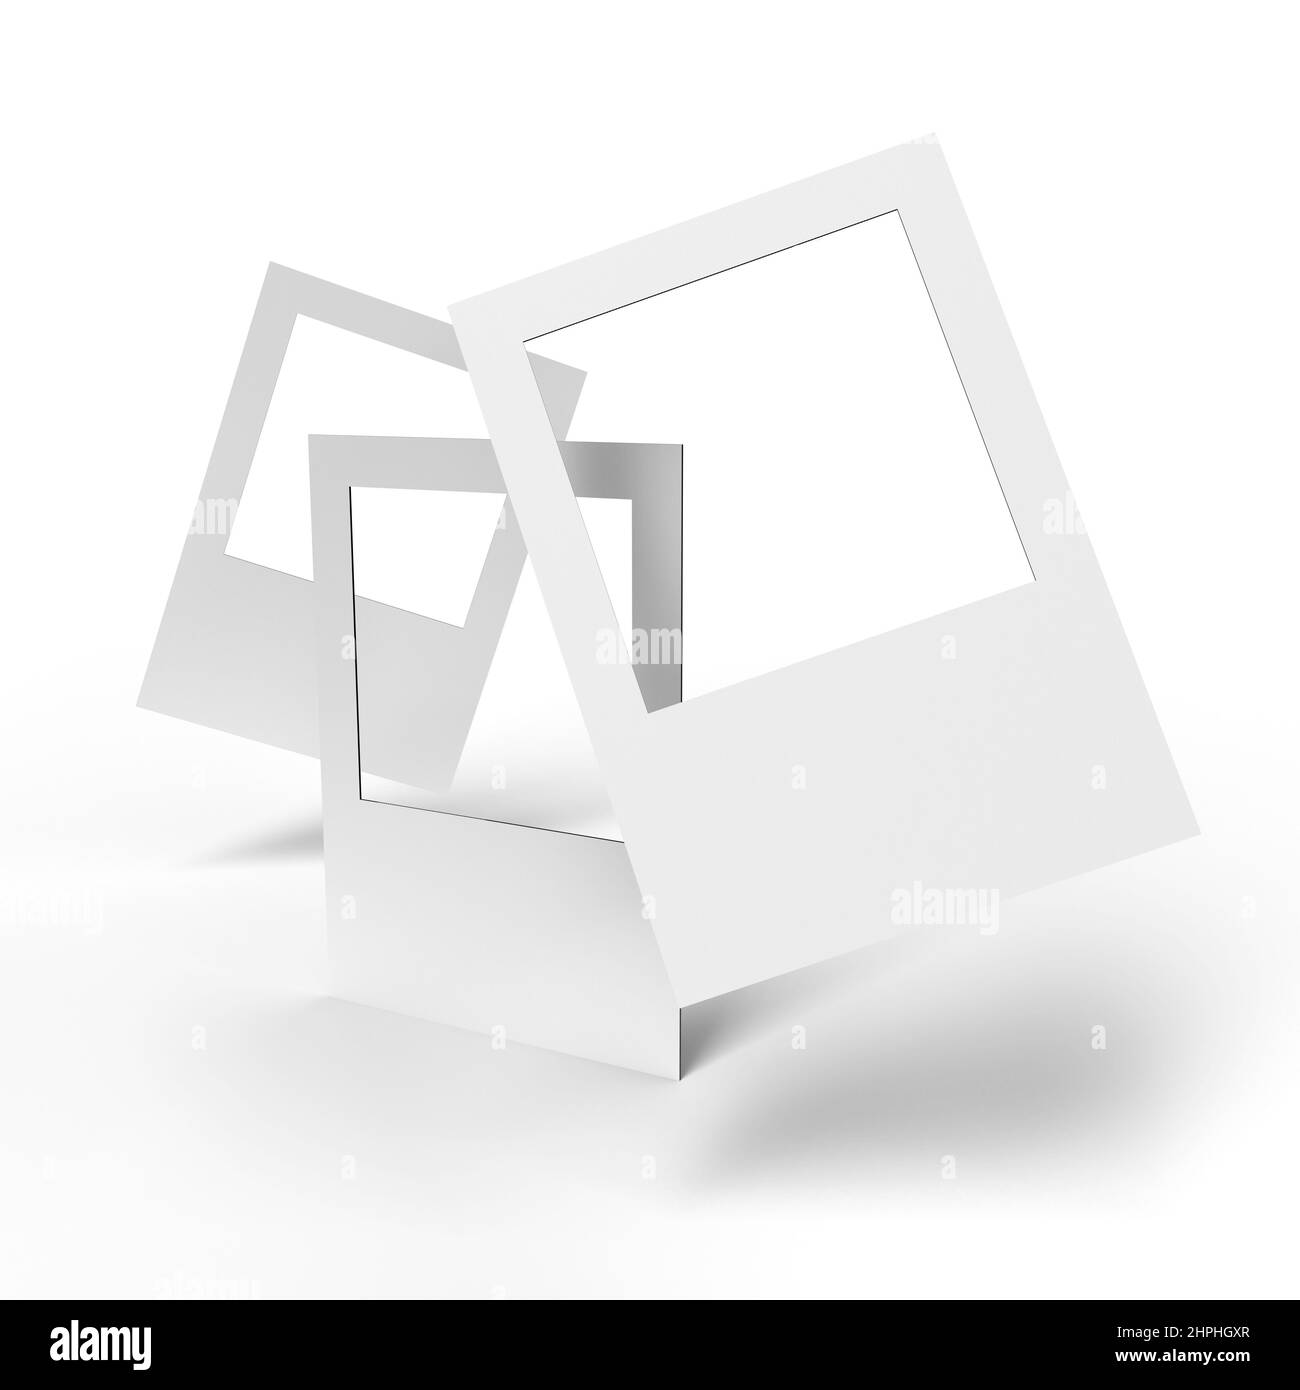 Eine bilderperfekte Darstellung von leeren Selfie-Rahmenbrettern mit 3D Render Wellpappe aus Kunststoff Correx-Textur isoliert auf weißem Hintergrund für Vorlage an Stockfoto